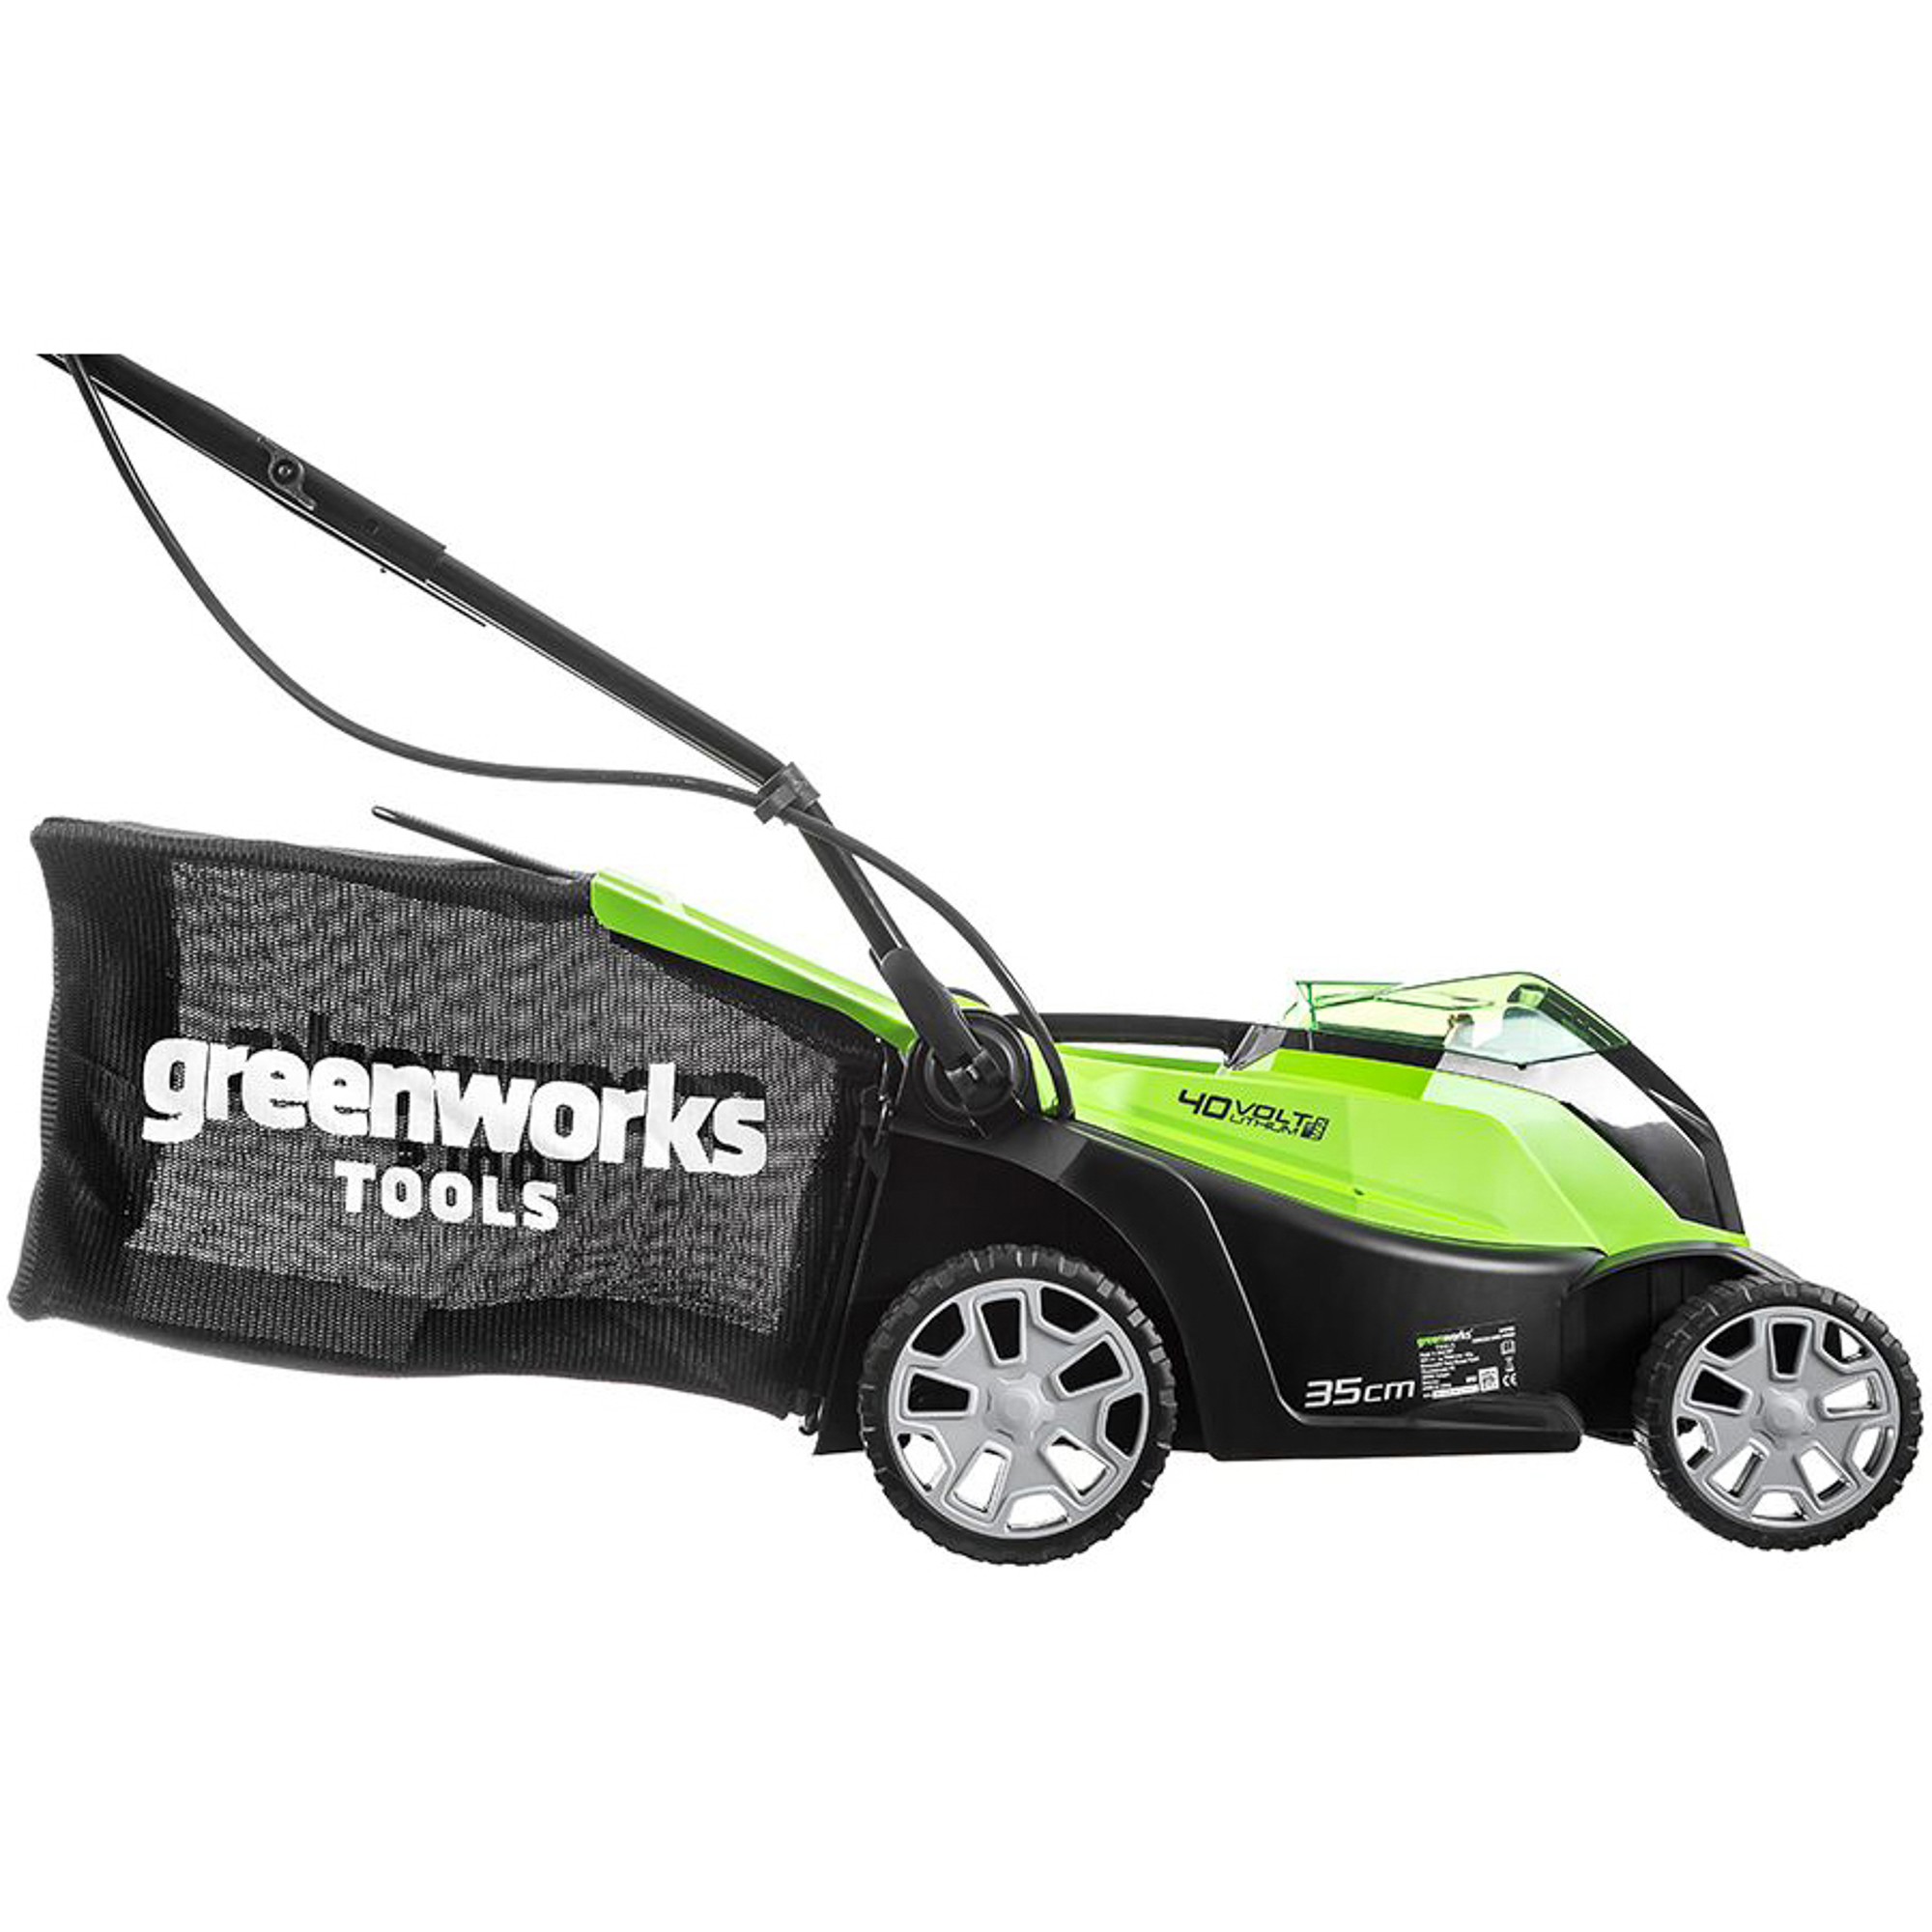 Газонокосилка GreenWorks G40LM35 без АКБ и ЗУ, цвет зеленый 2500067/2501907 - фото 3